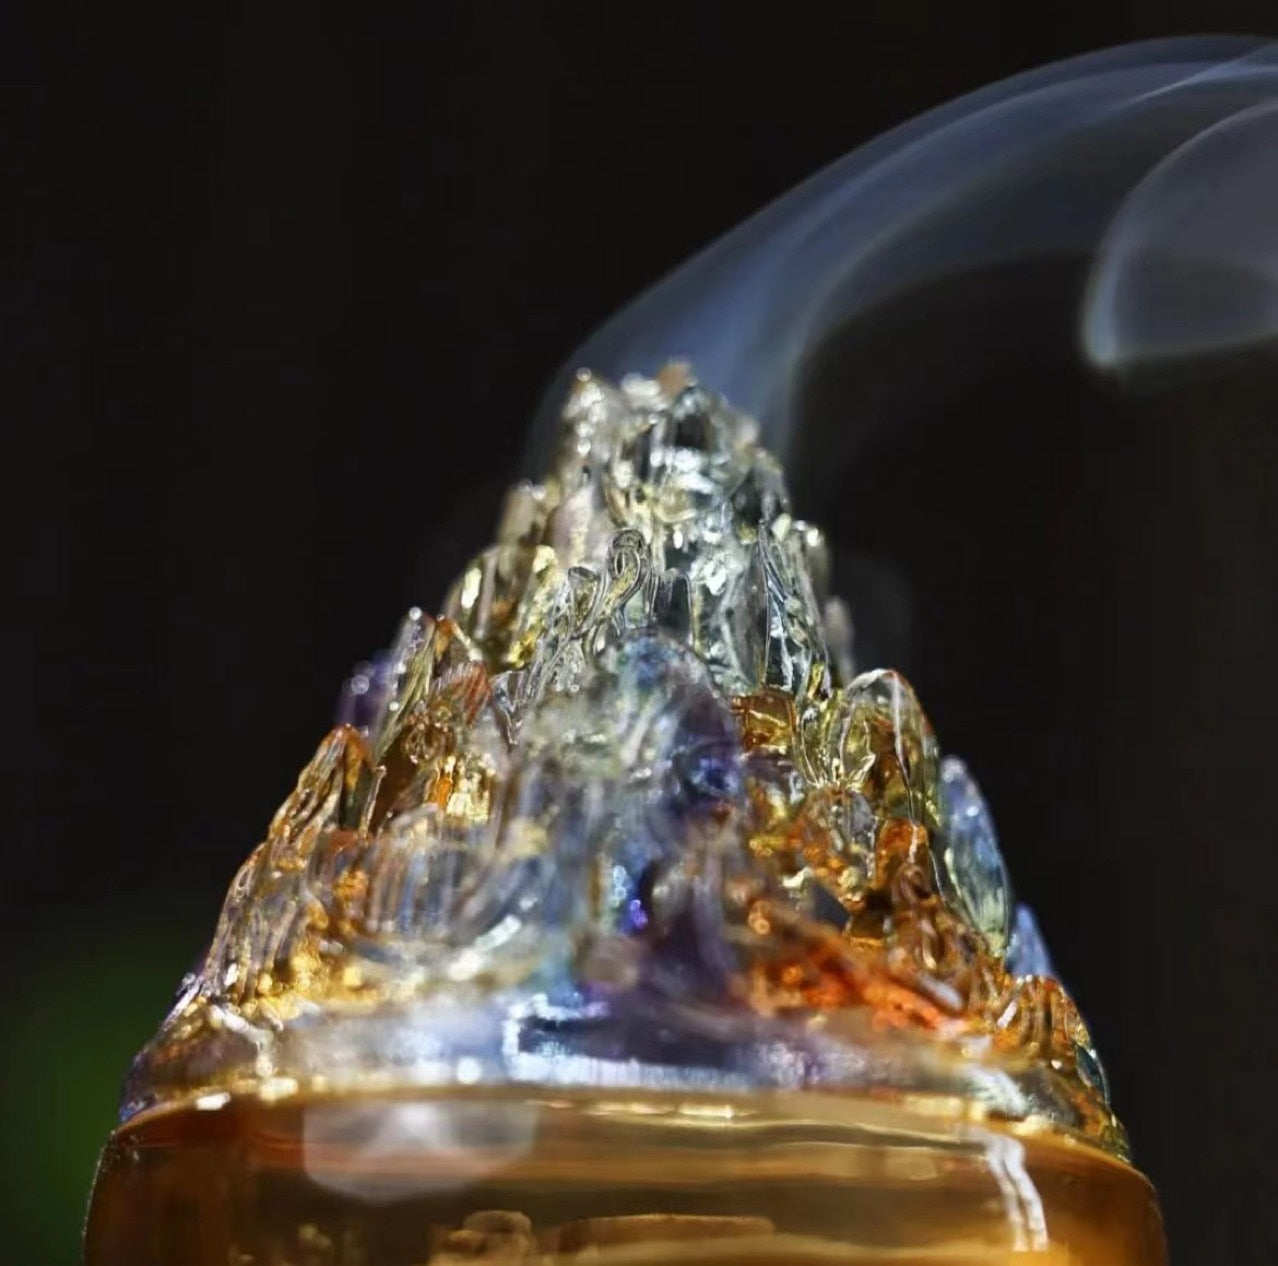 【虹水晶 Rainbow quartz Incense】虹色の硝子水晶 お香立て 香炉 中国 お香 癒し 瞑想 ヨガ リラックス